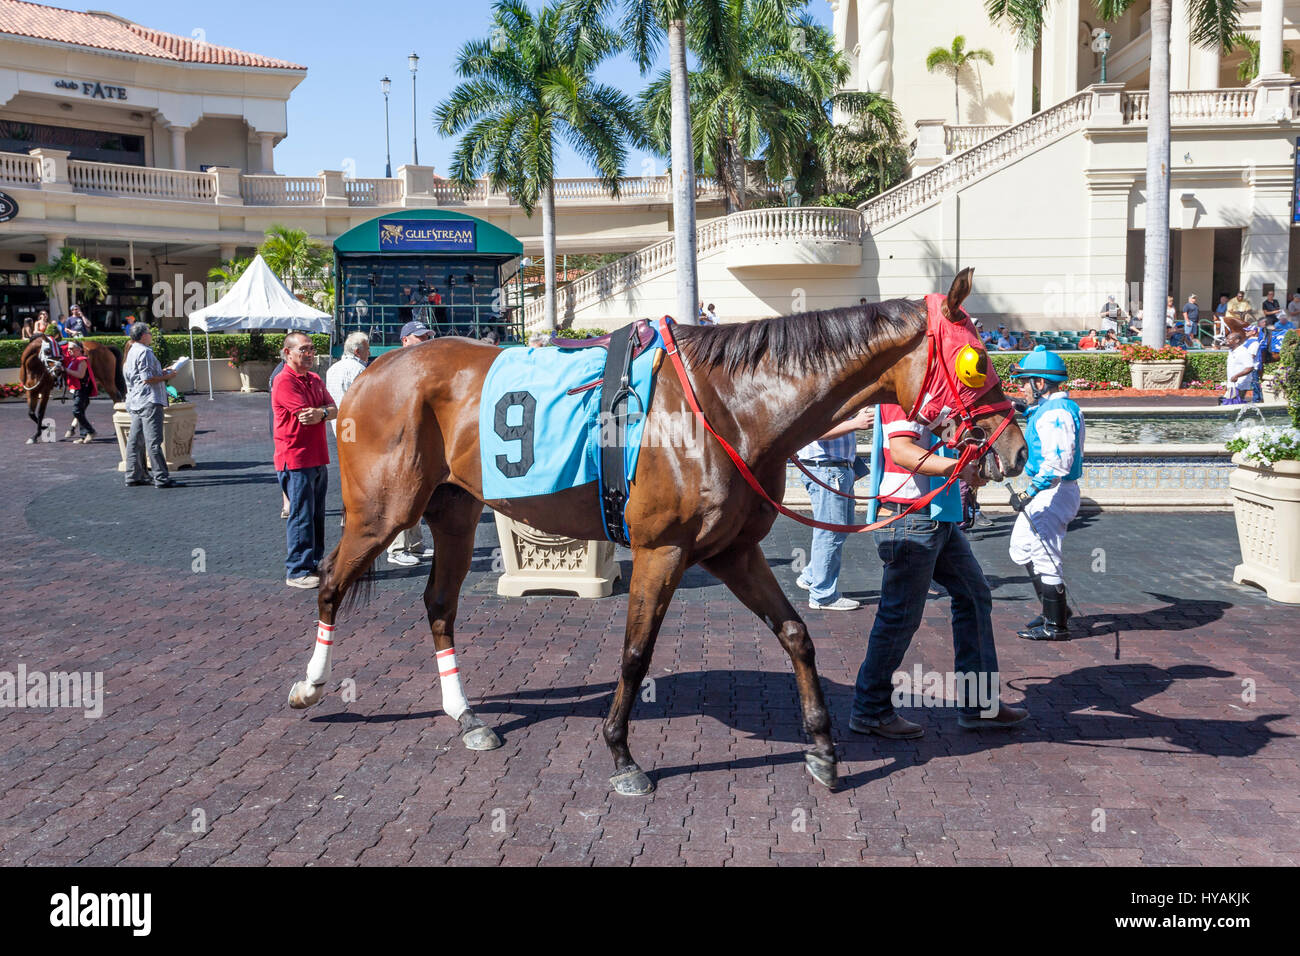 HALLANDALE BEACH, EE.UU. - Mar 11, 2017: caballos de carreras mostrar en el Gulfstream Park Race Track en Hallandale Beach, Florida, Estados Unidos Foto de stock